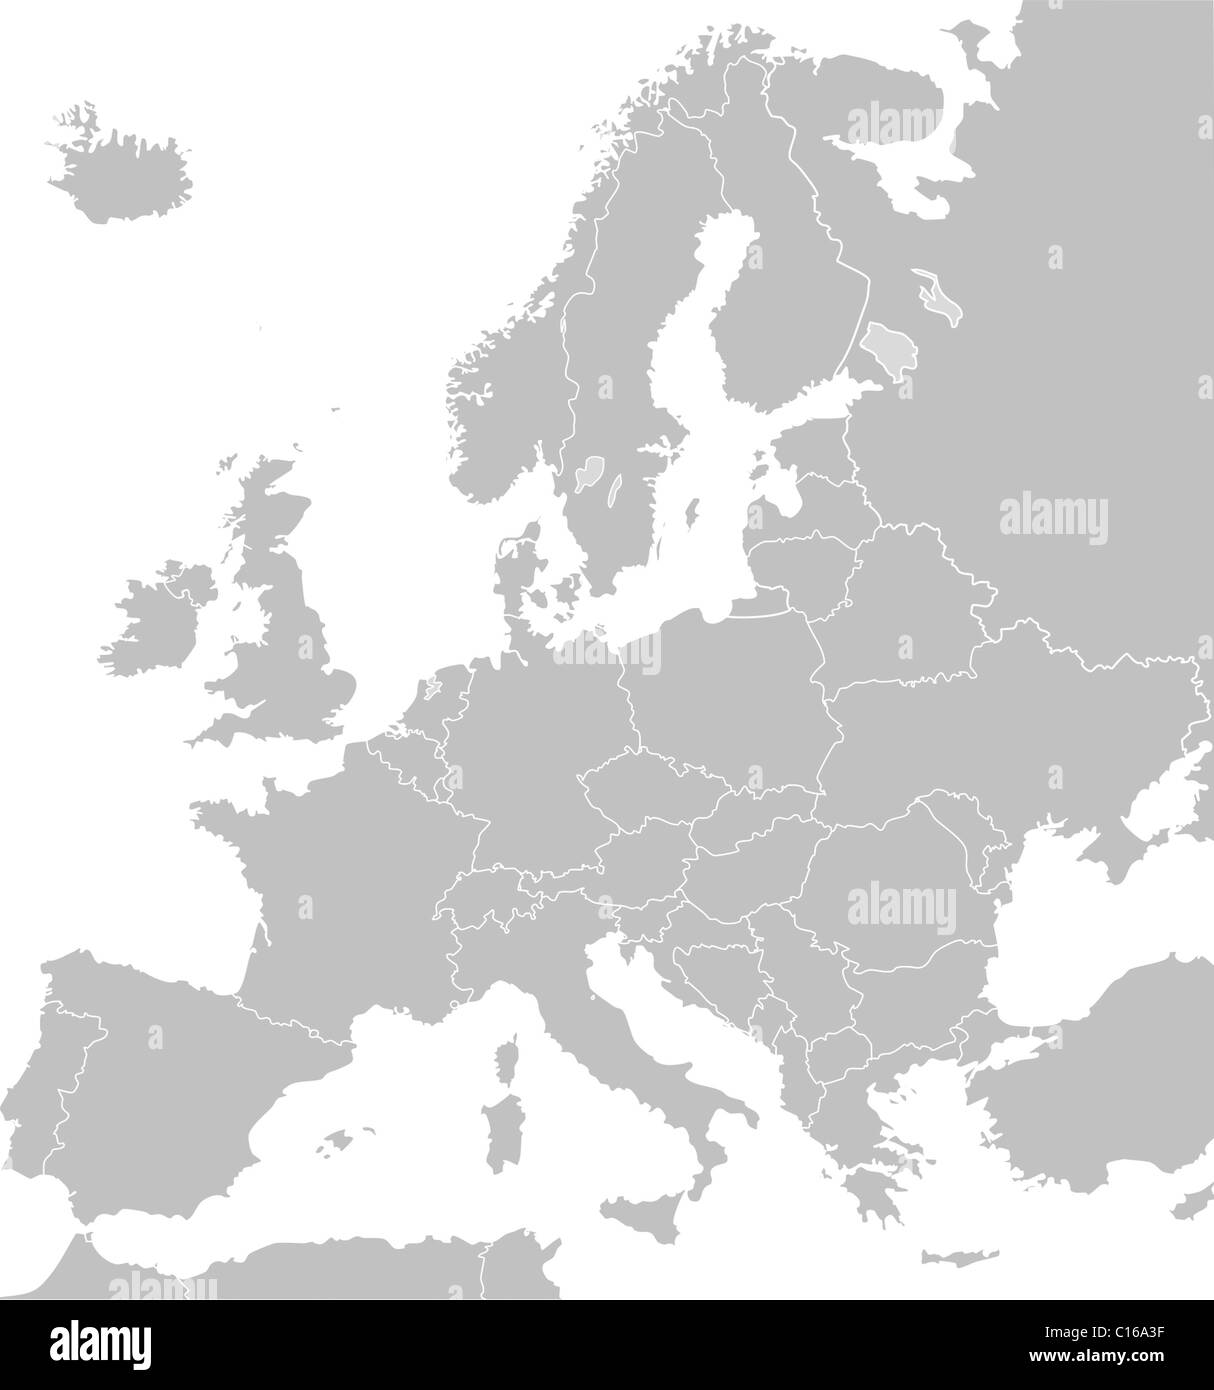 Carte illustrée de l'Europe en gris ou gris avec des frontières de pays ; fond blanc. Banque D'Images